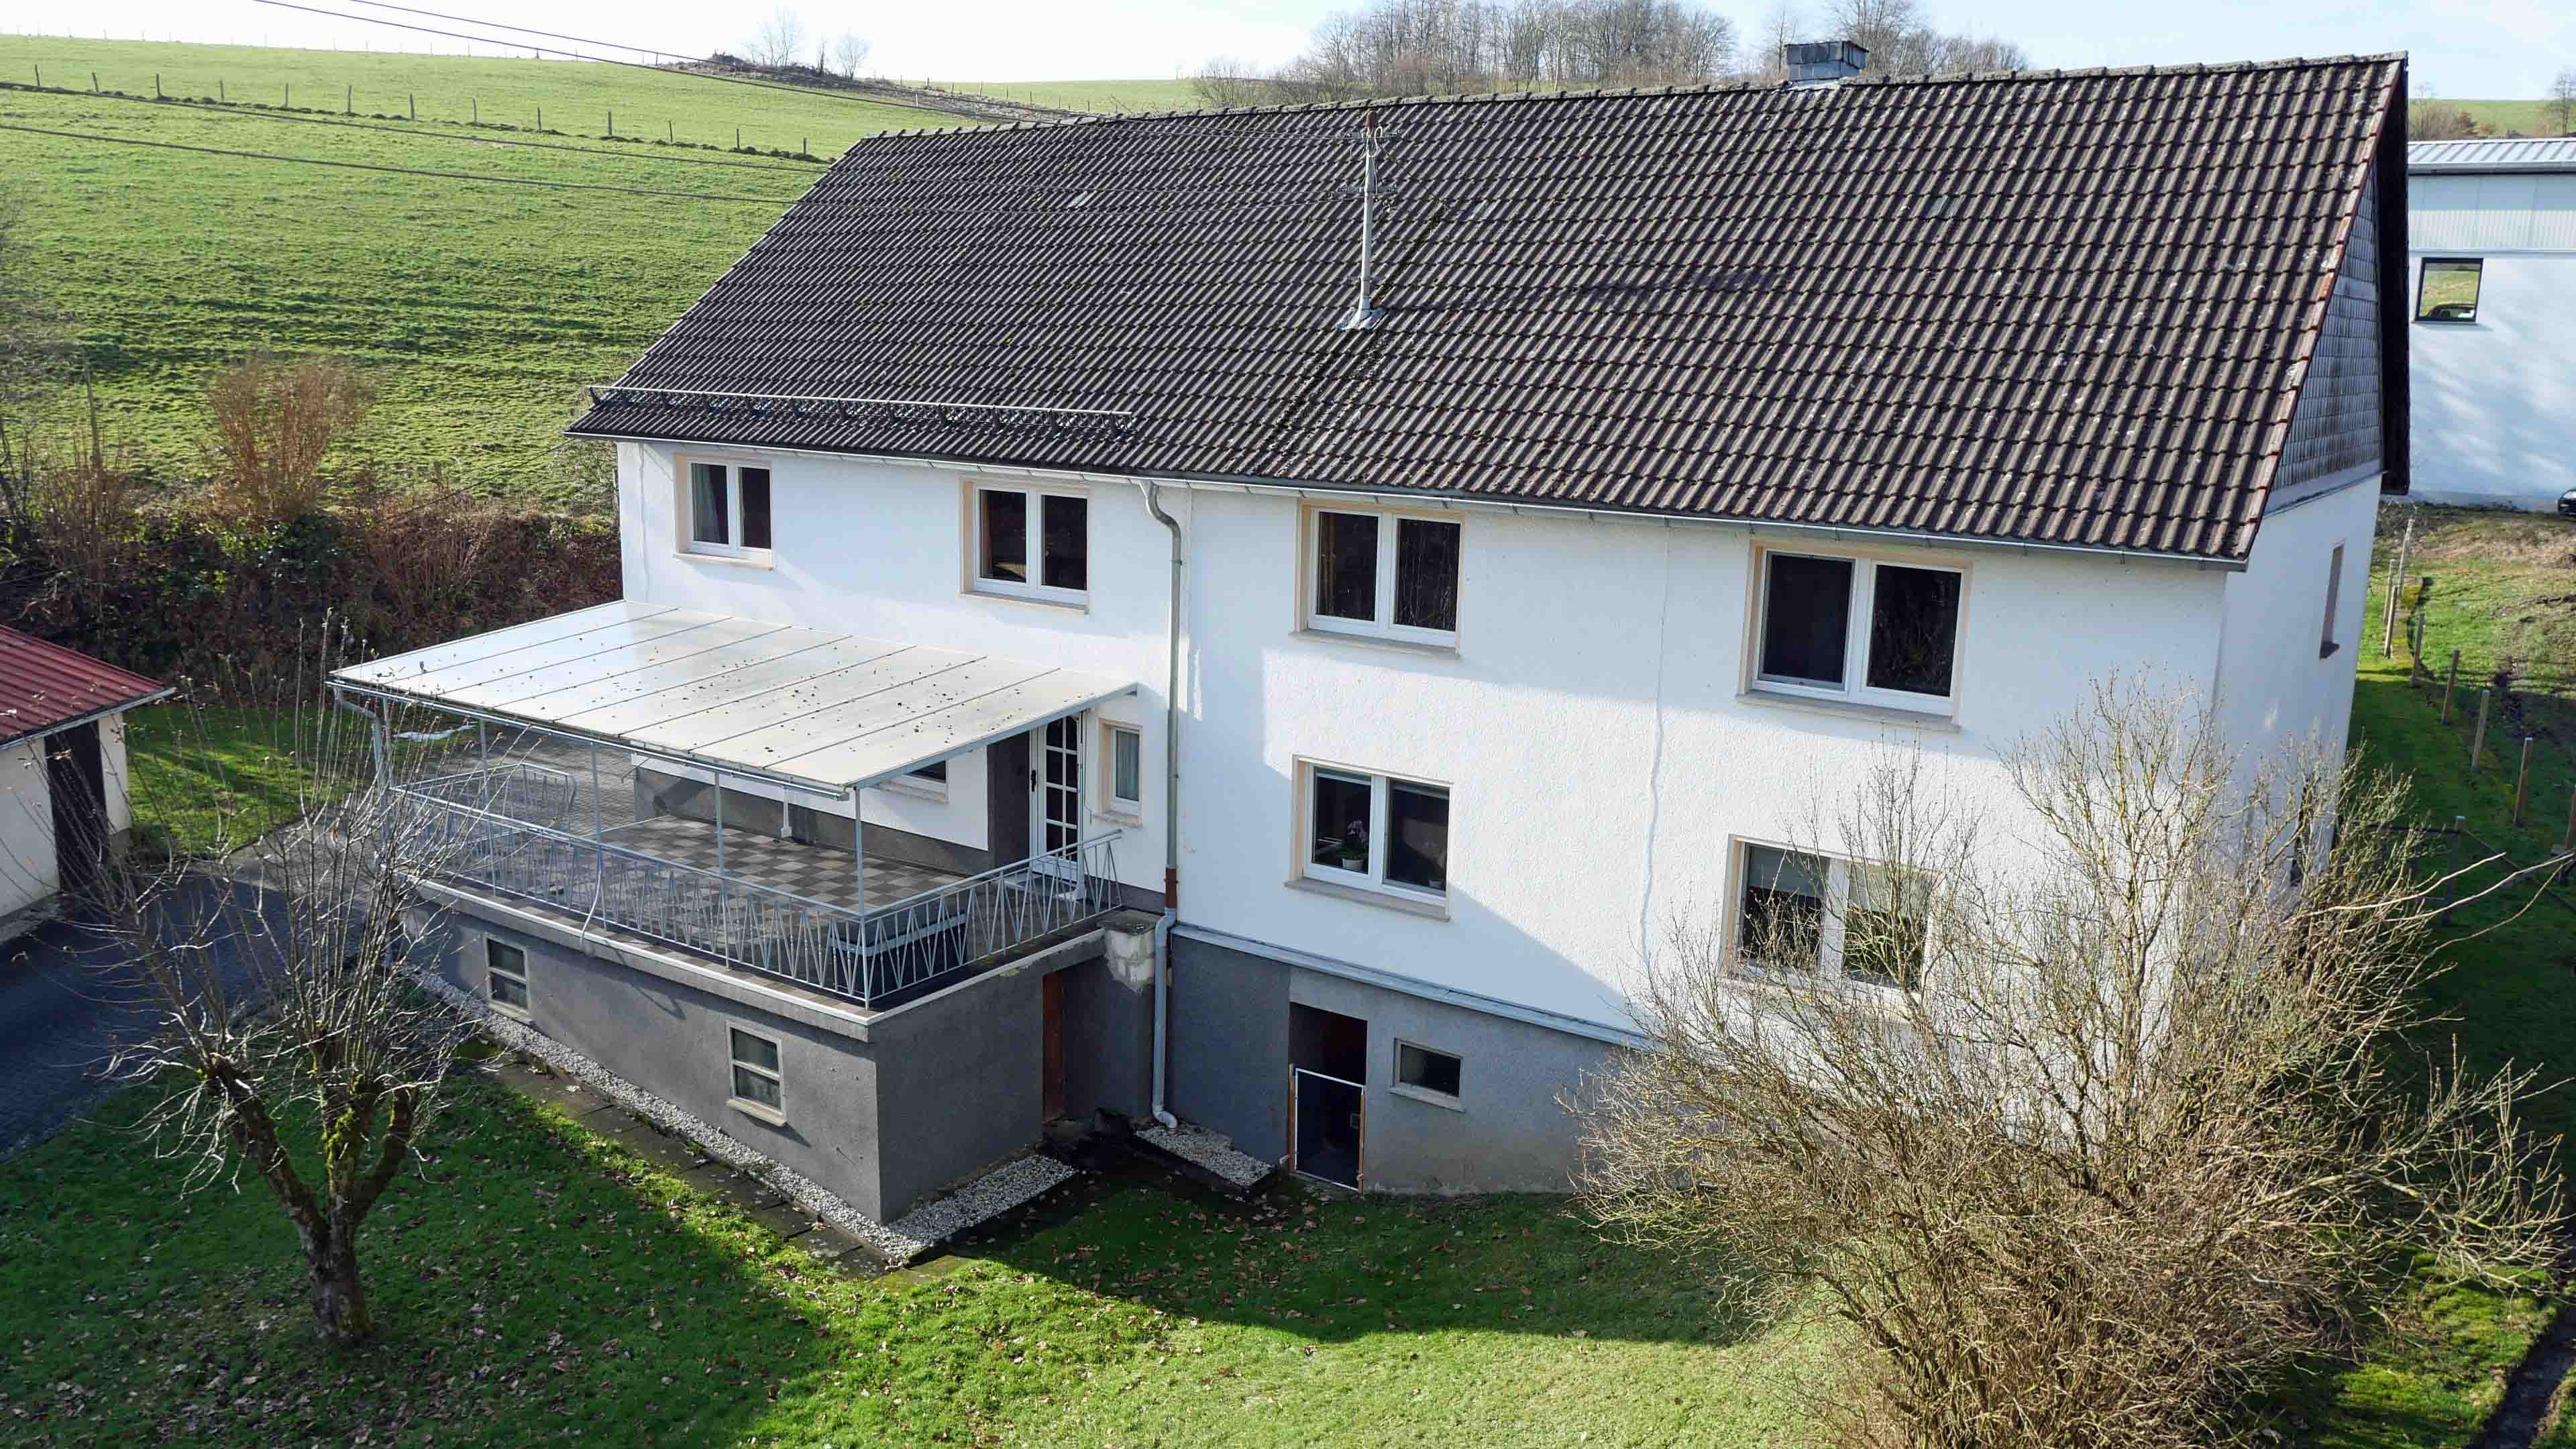 Morsbach-Ortseifen: Bauernhaus mit ELW, 2 Garagen, 2 Carports, Stall und 1,1 ha Weide, Wohnhaus mit Terrasse 